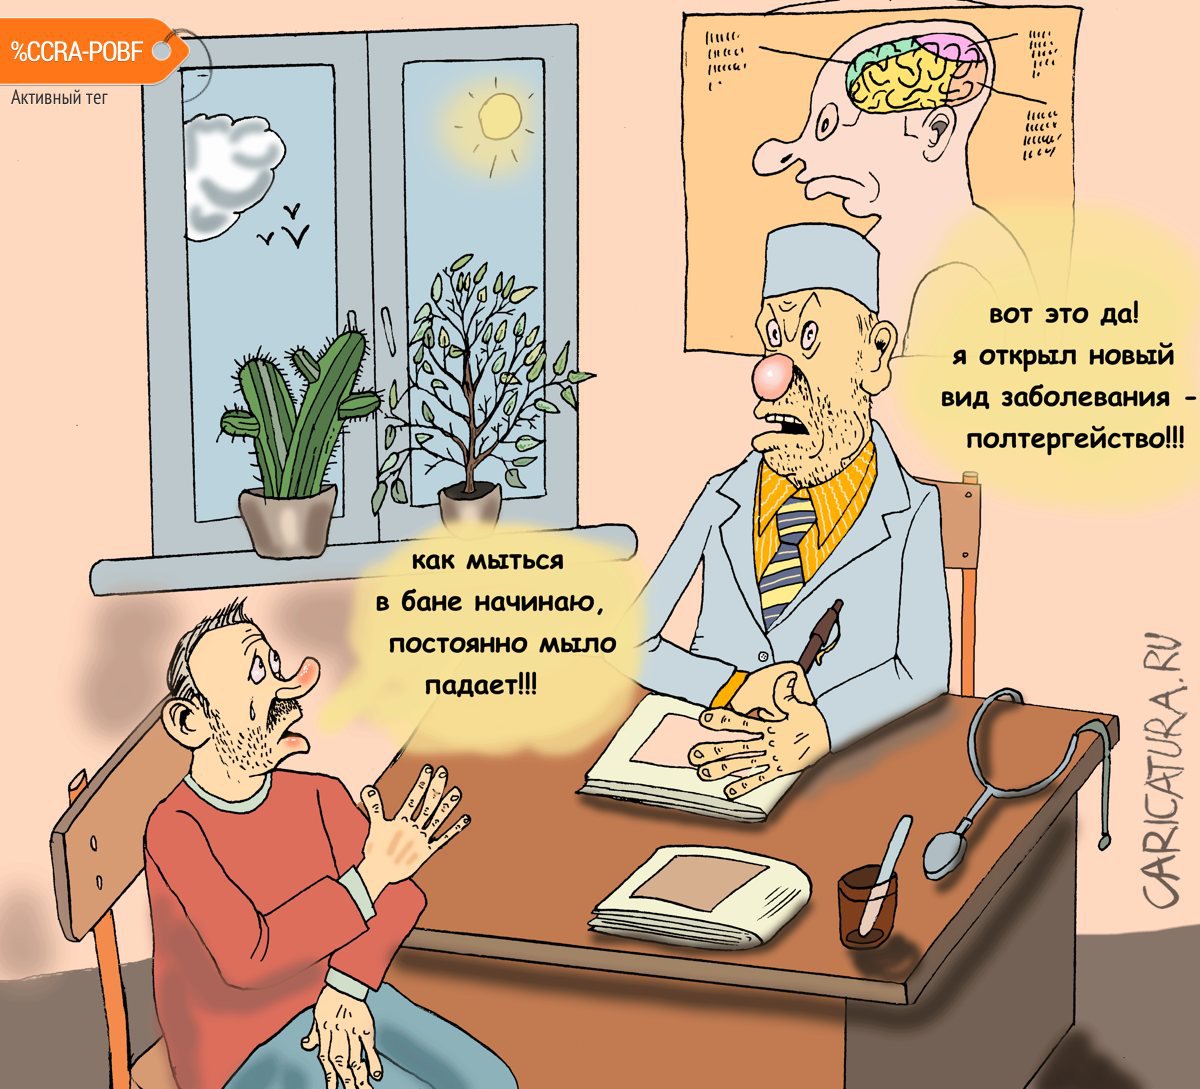 Карикатура "Новый вид заболевания", Булат Ирсаев